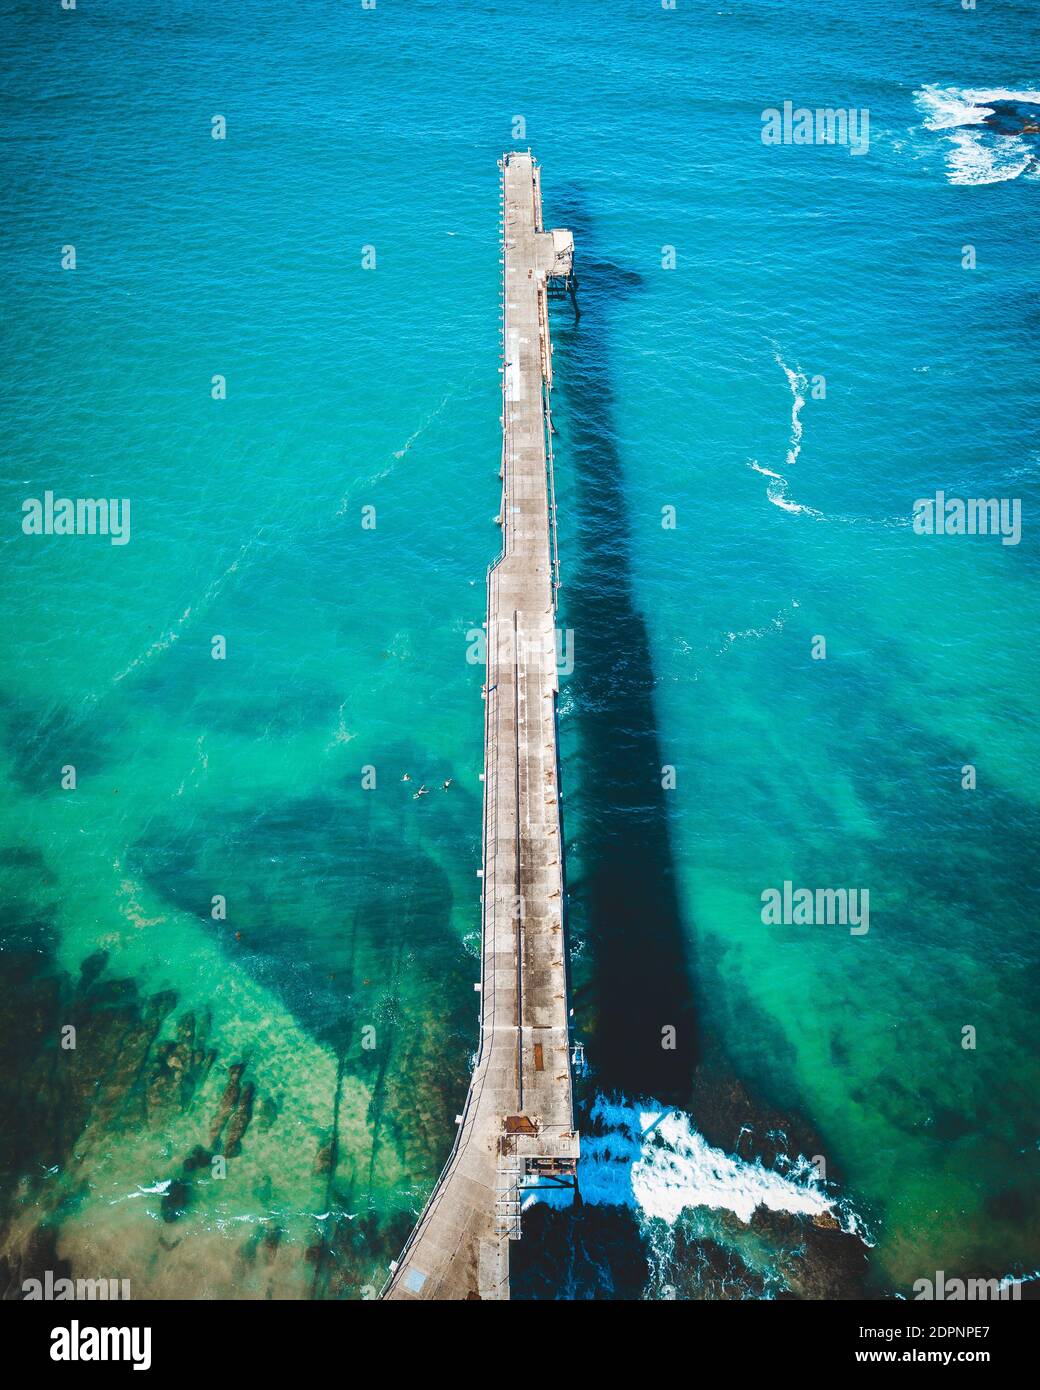 Vista aérea del muelle sobre el mar Foto de stock